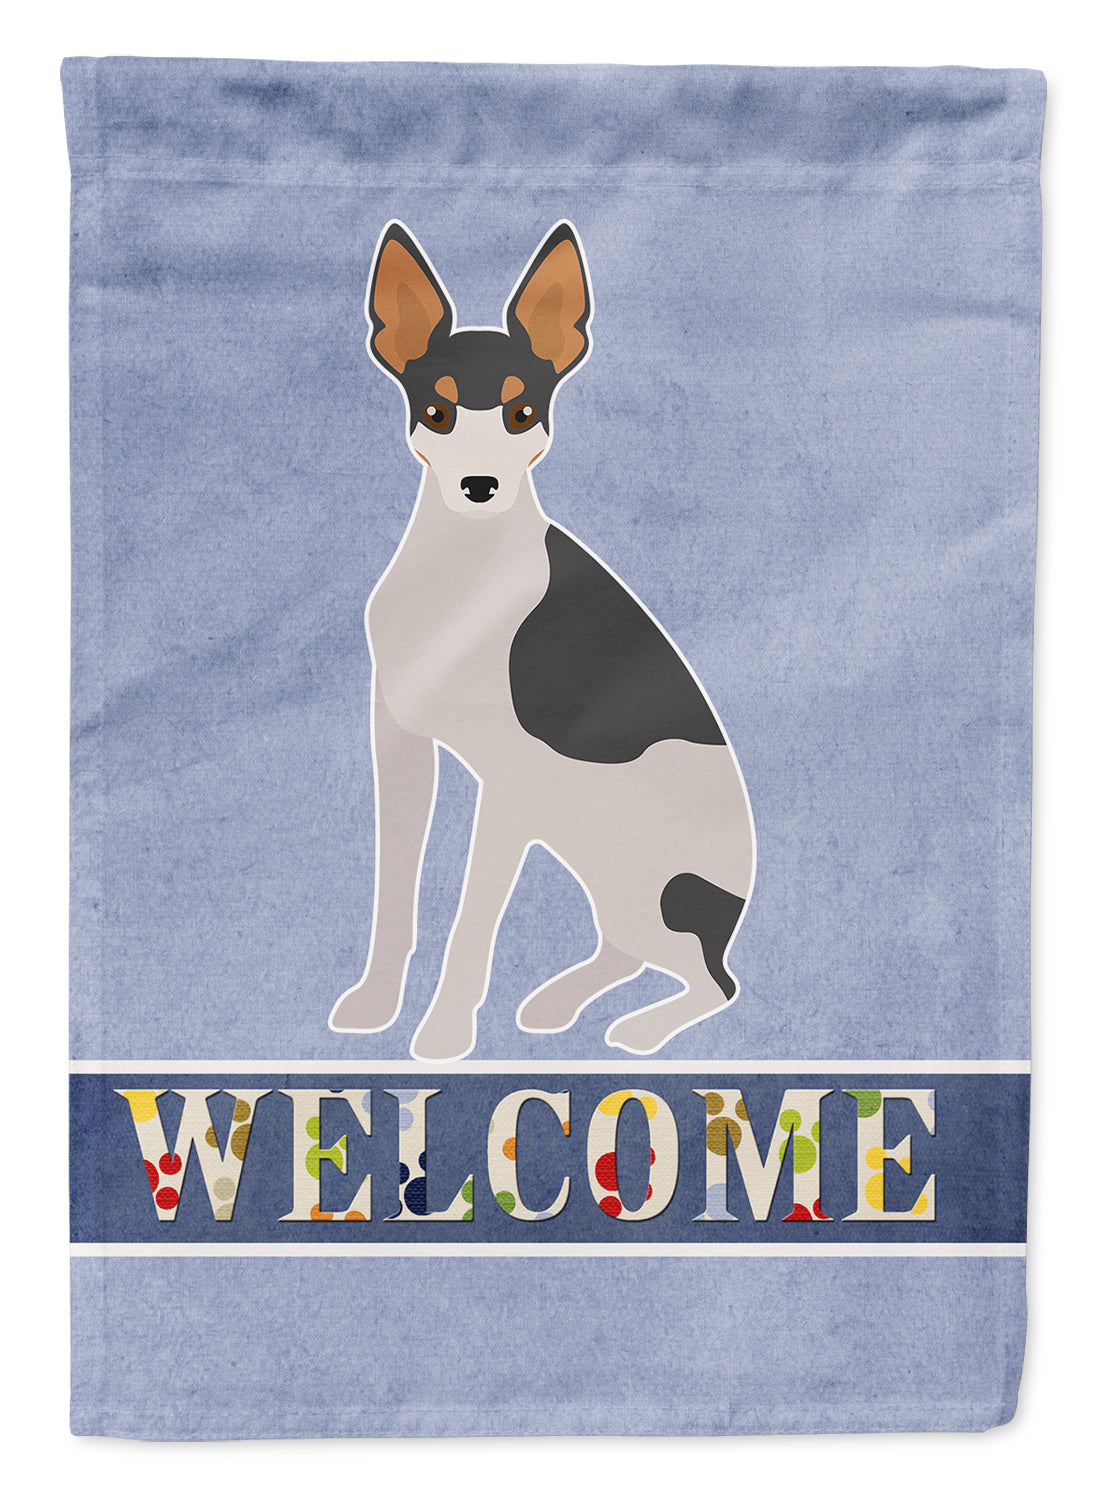 Miniature Fox Terrier #2 Welcome Flag Garden Size CK3694GF